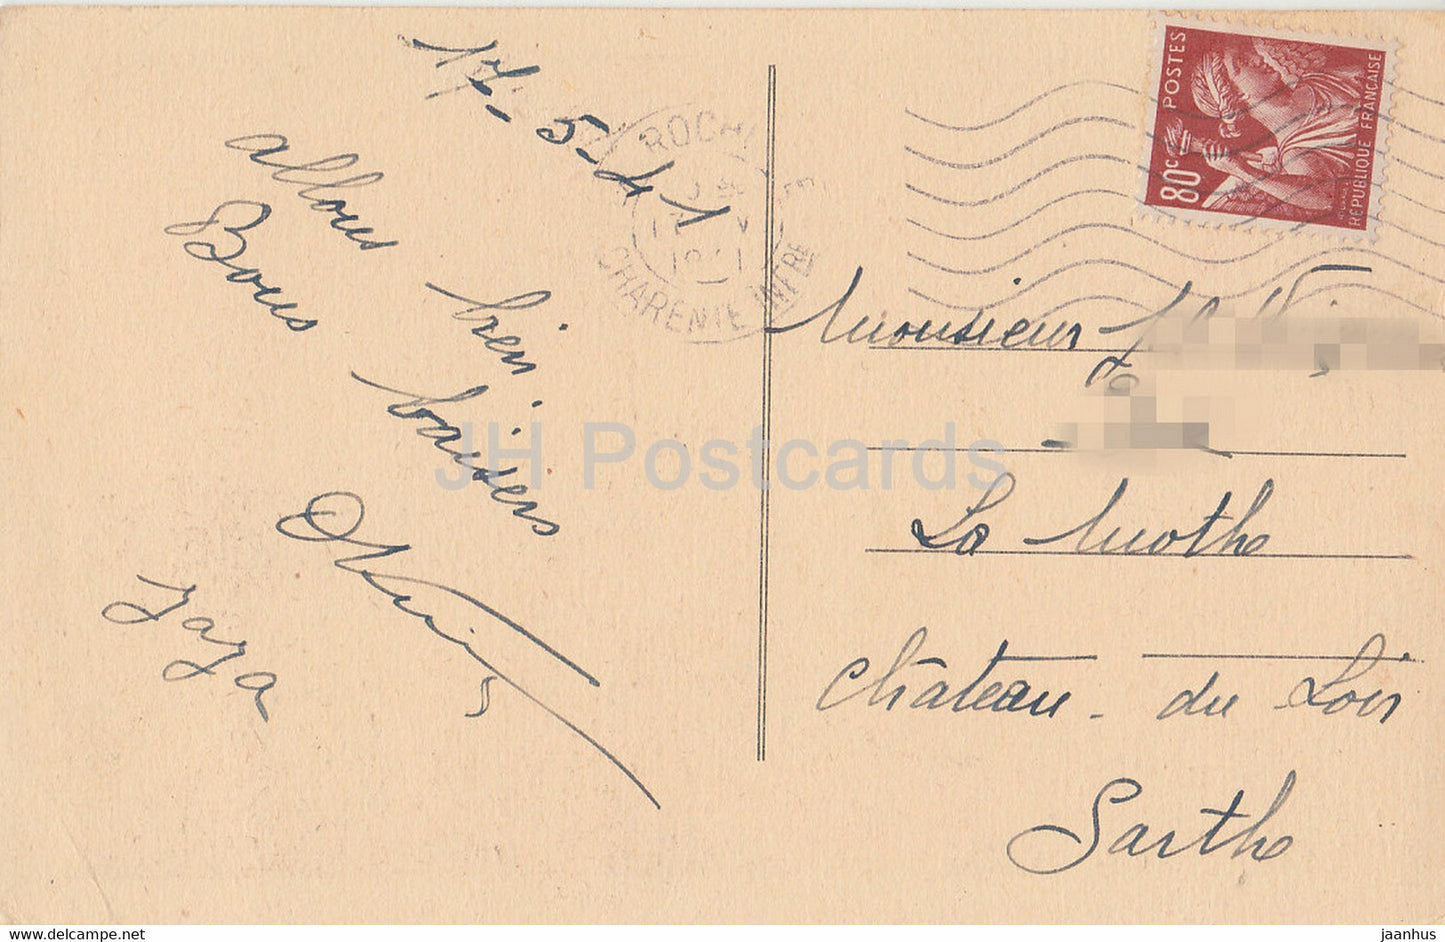 La Rochelle - L'Entrée du Port - Boot - Schiff - alte Postkarte - 1941 - Frankreich - gebraucht